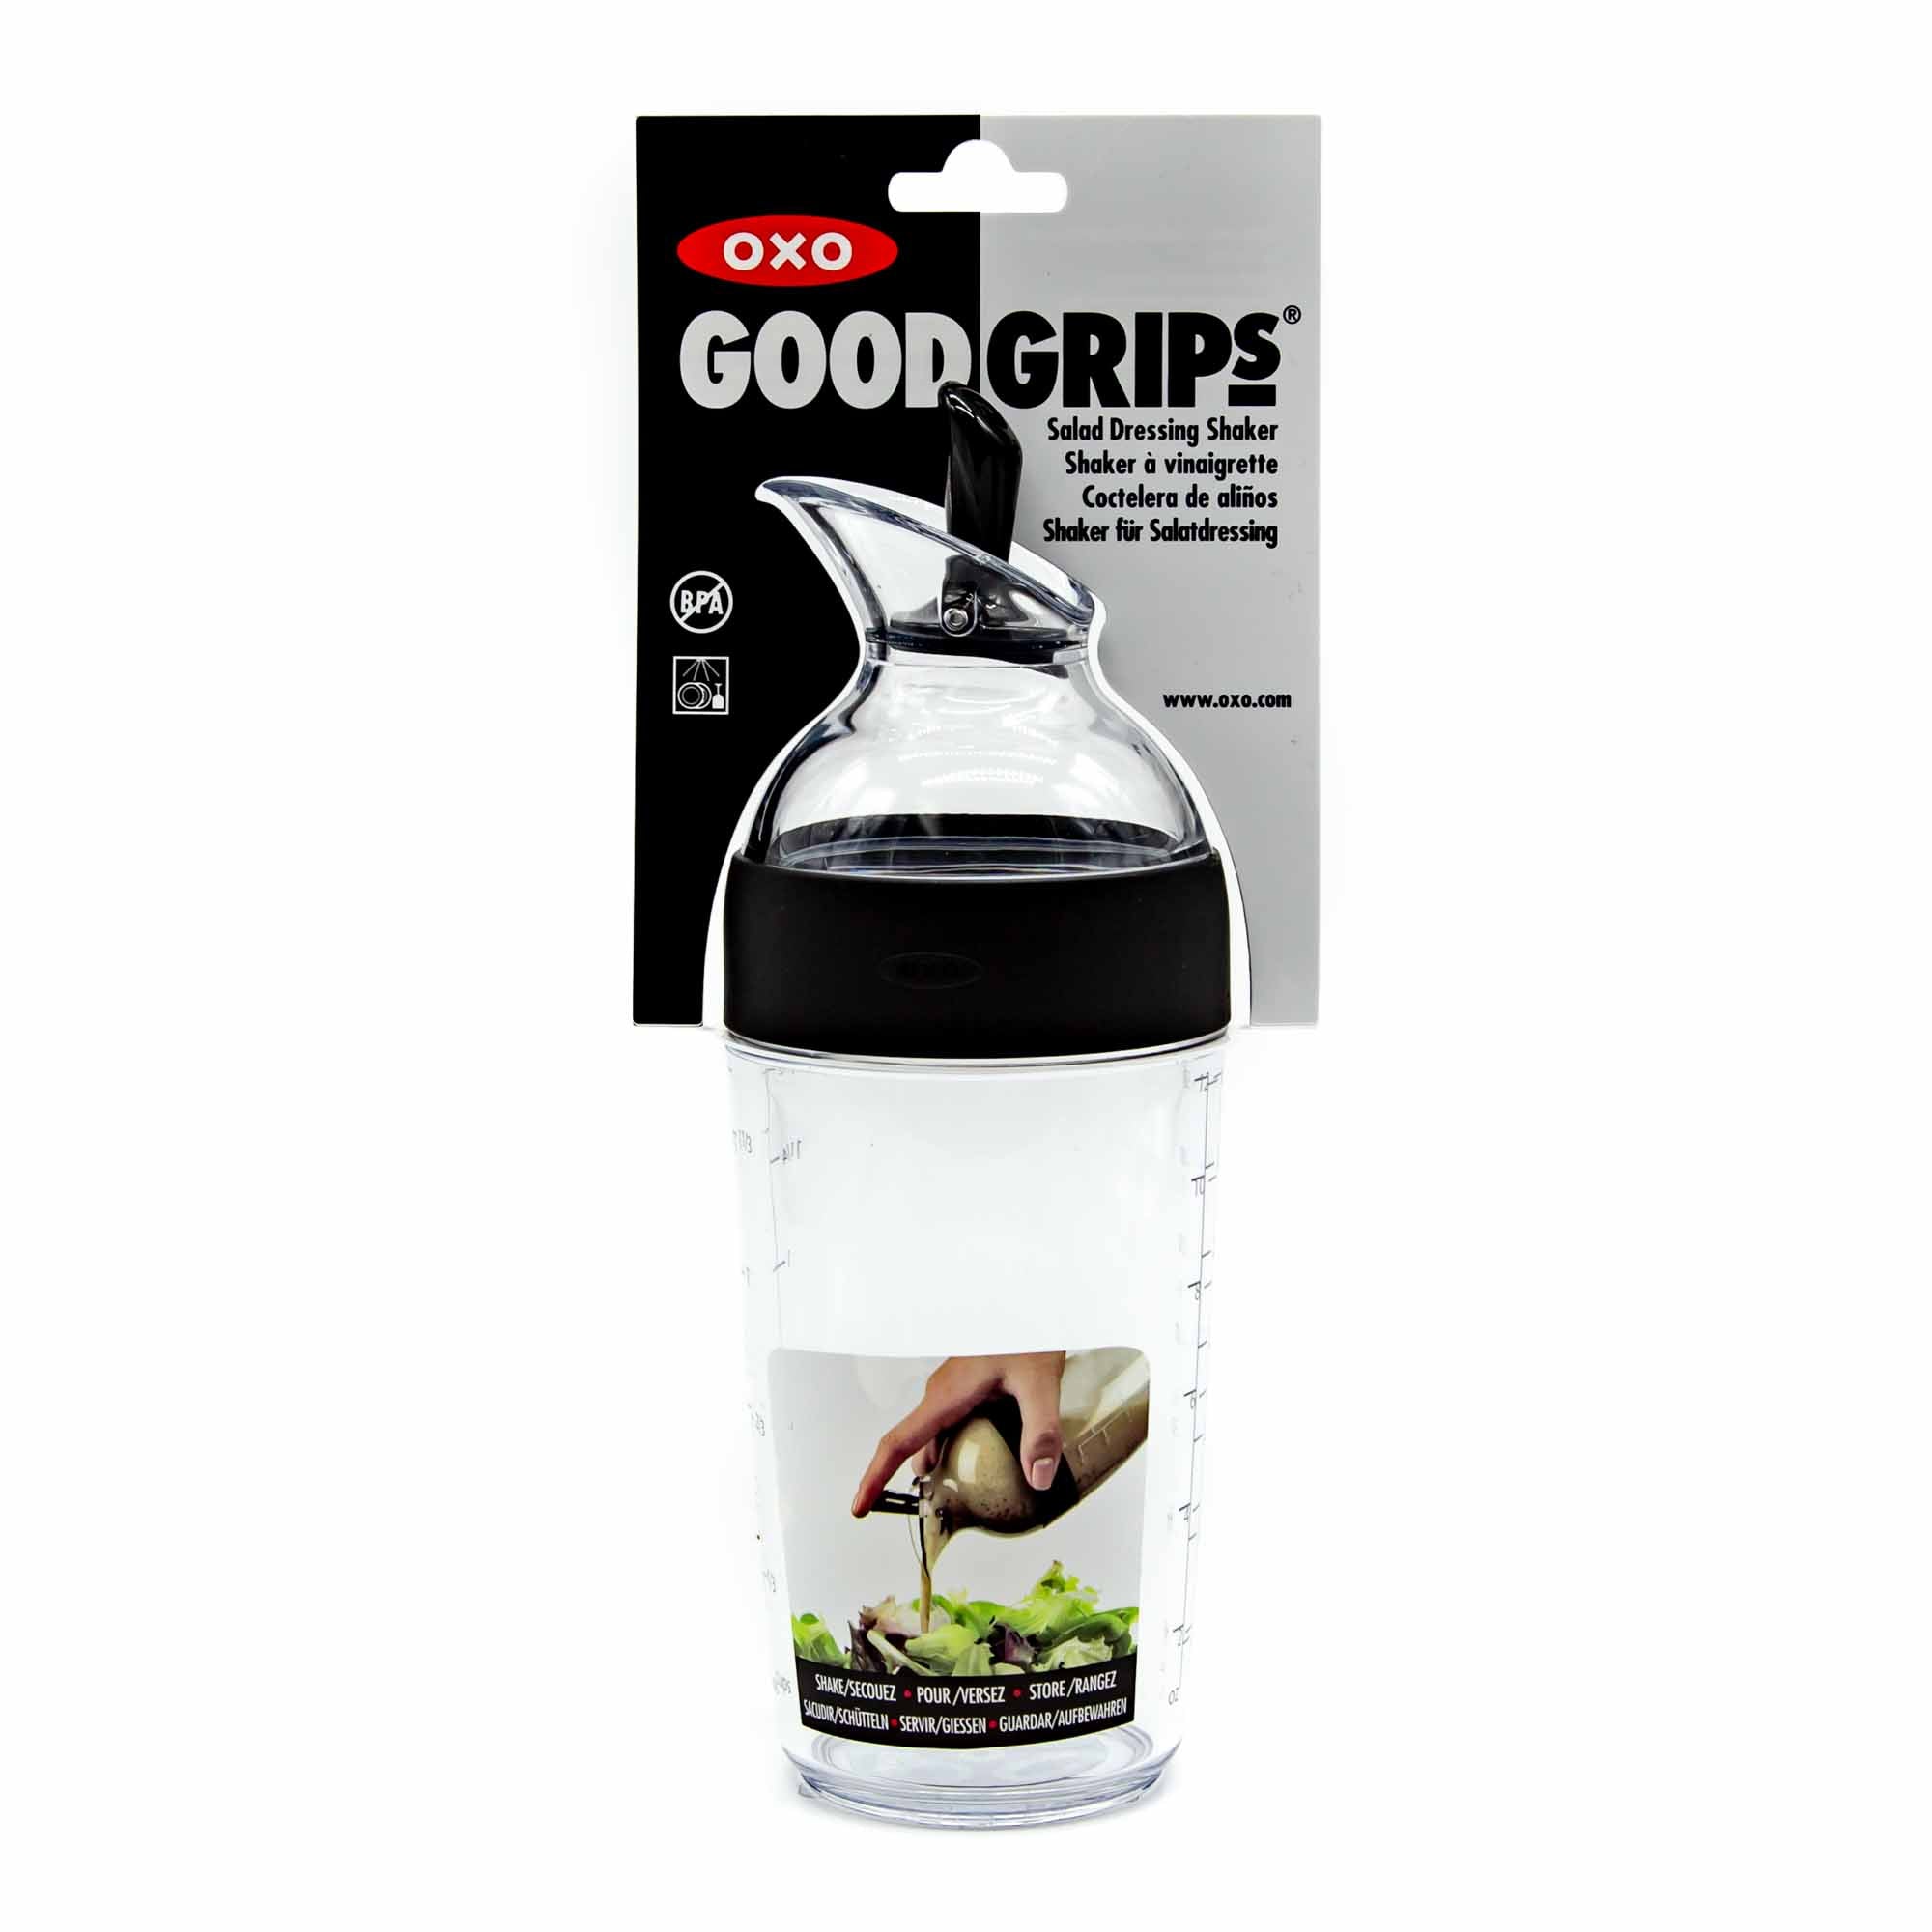 OXO Good Grips Salad Dressing Shaker, Black